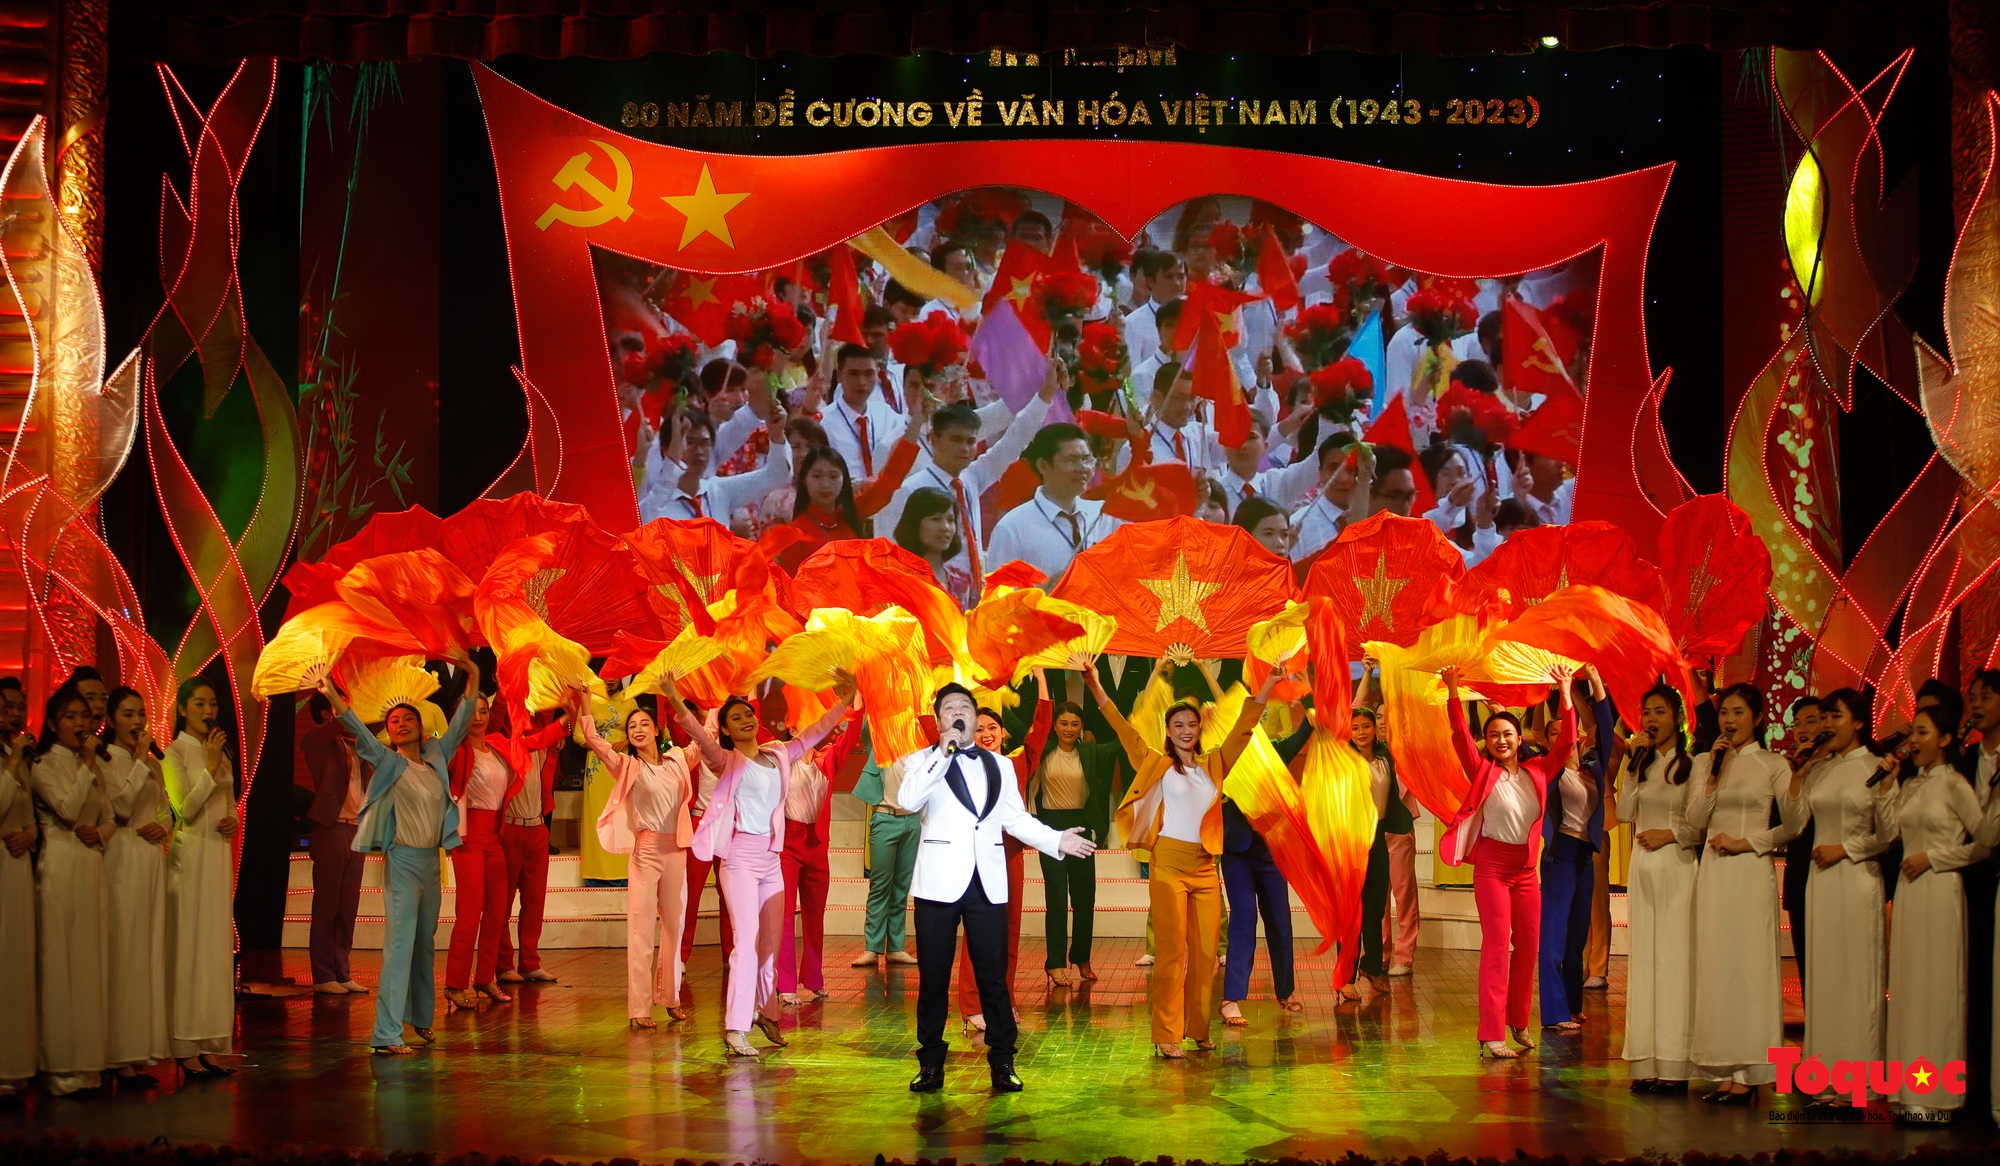 Chùm ảnh: Lễ kỷ niệm và chương trình nghệ thuật đặc biệt kỷ niệm 80 năm ra đời Đề cương văn hóa Việt Nam - Ảnh 18.